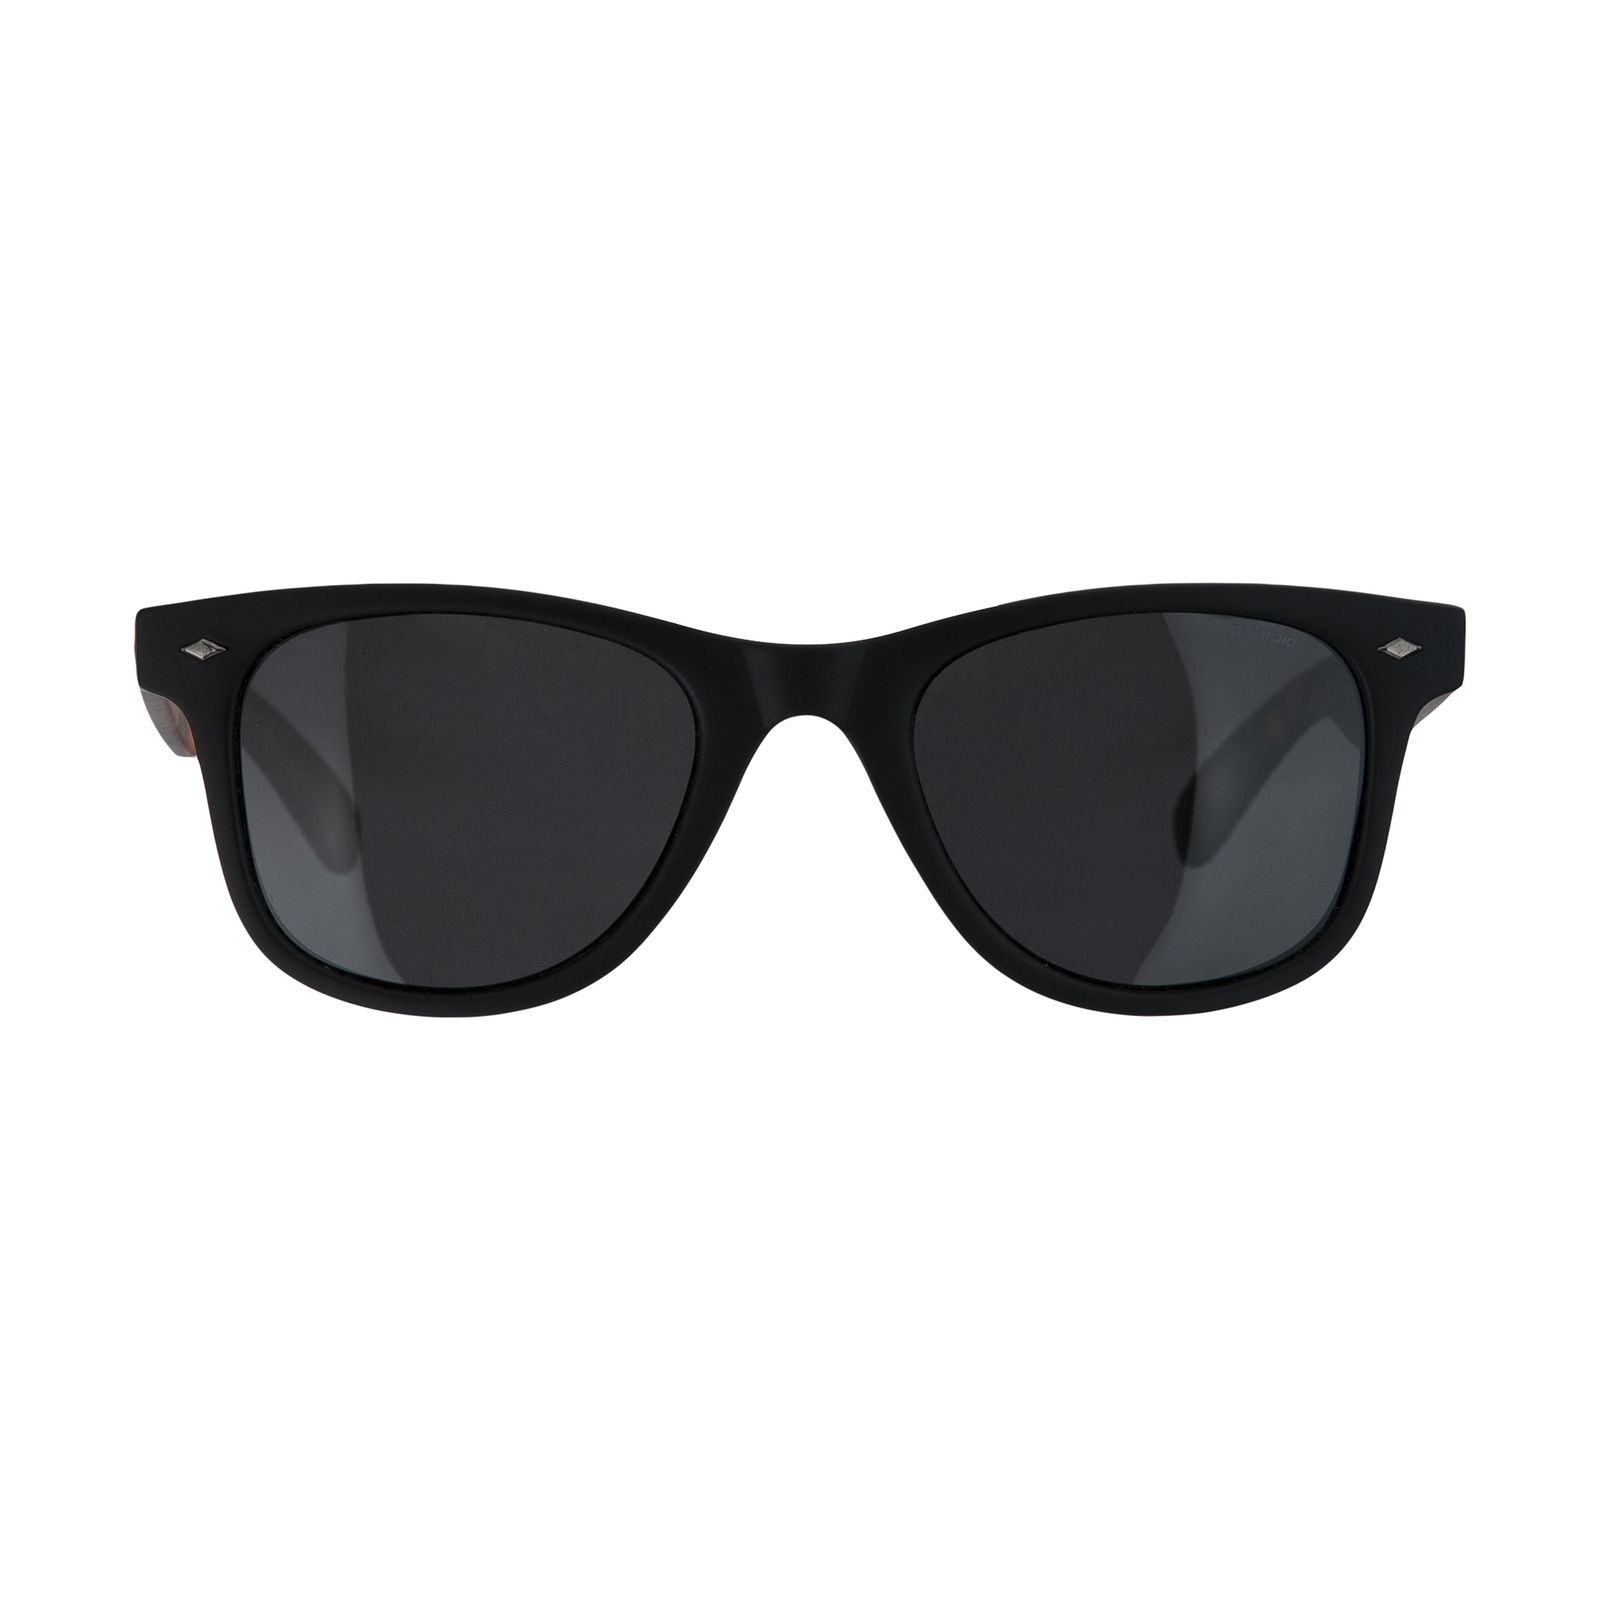 عینک آفتابی پولاروید مدل pld 1016-mtblck-50 -  - 1